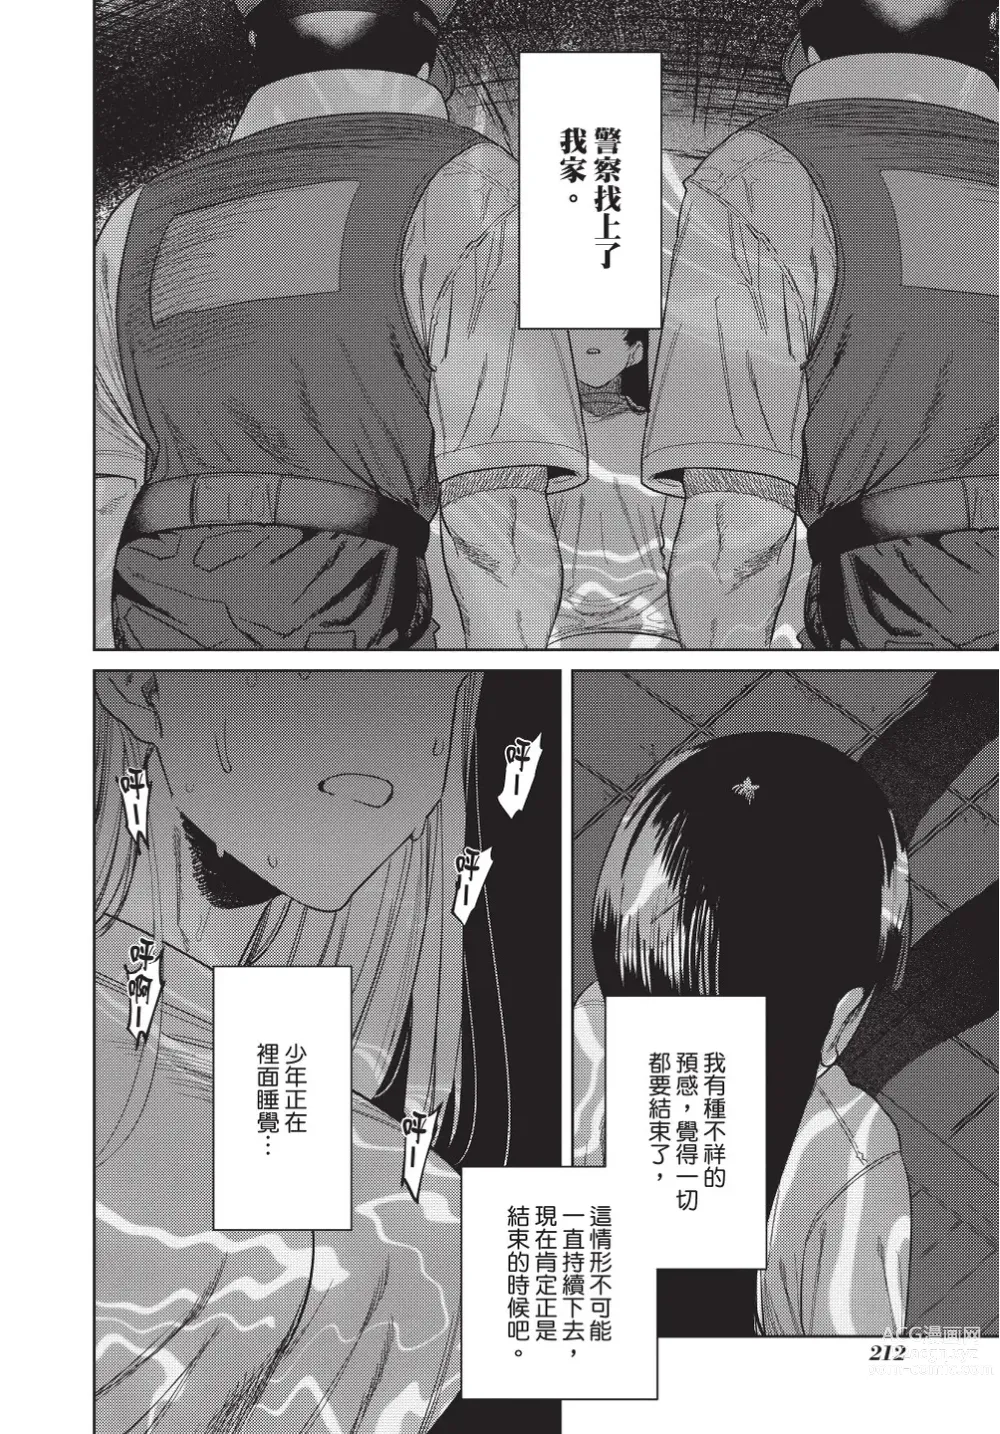 Page 214 of manga 在異世界旅途中拯救我的是一名少年殺手